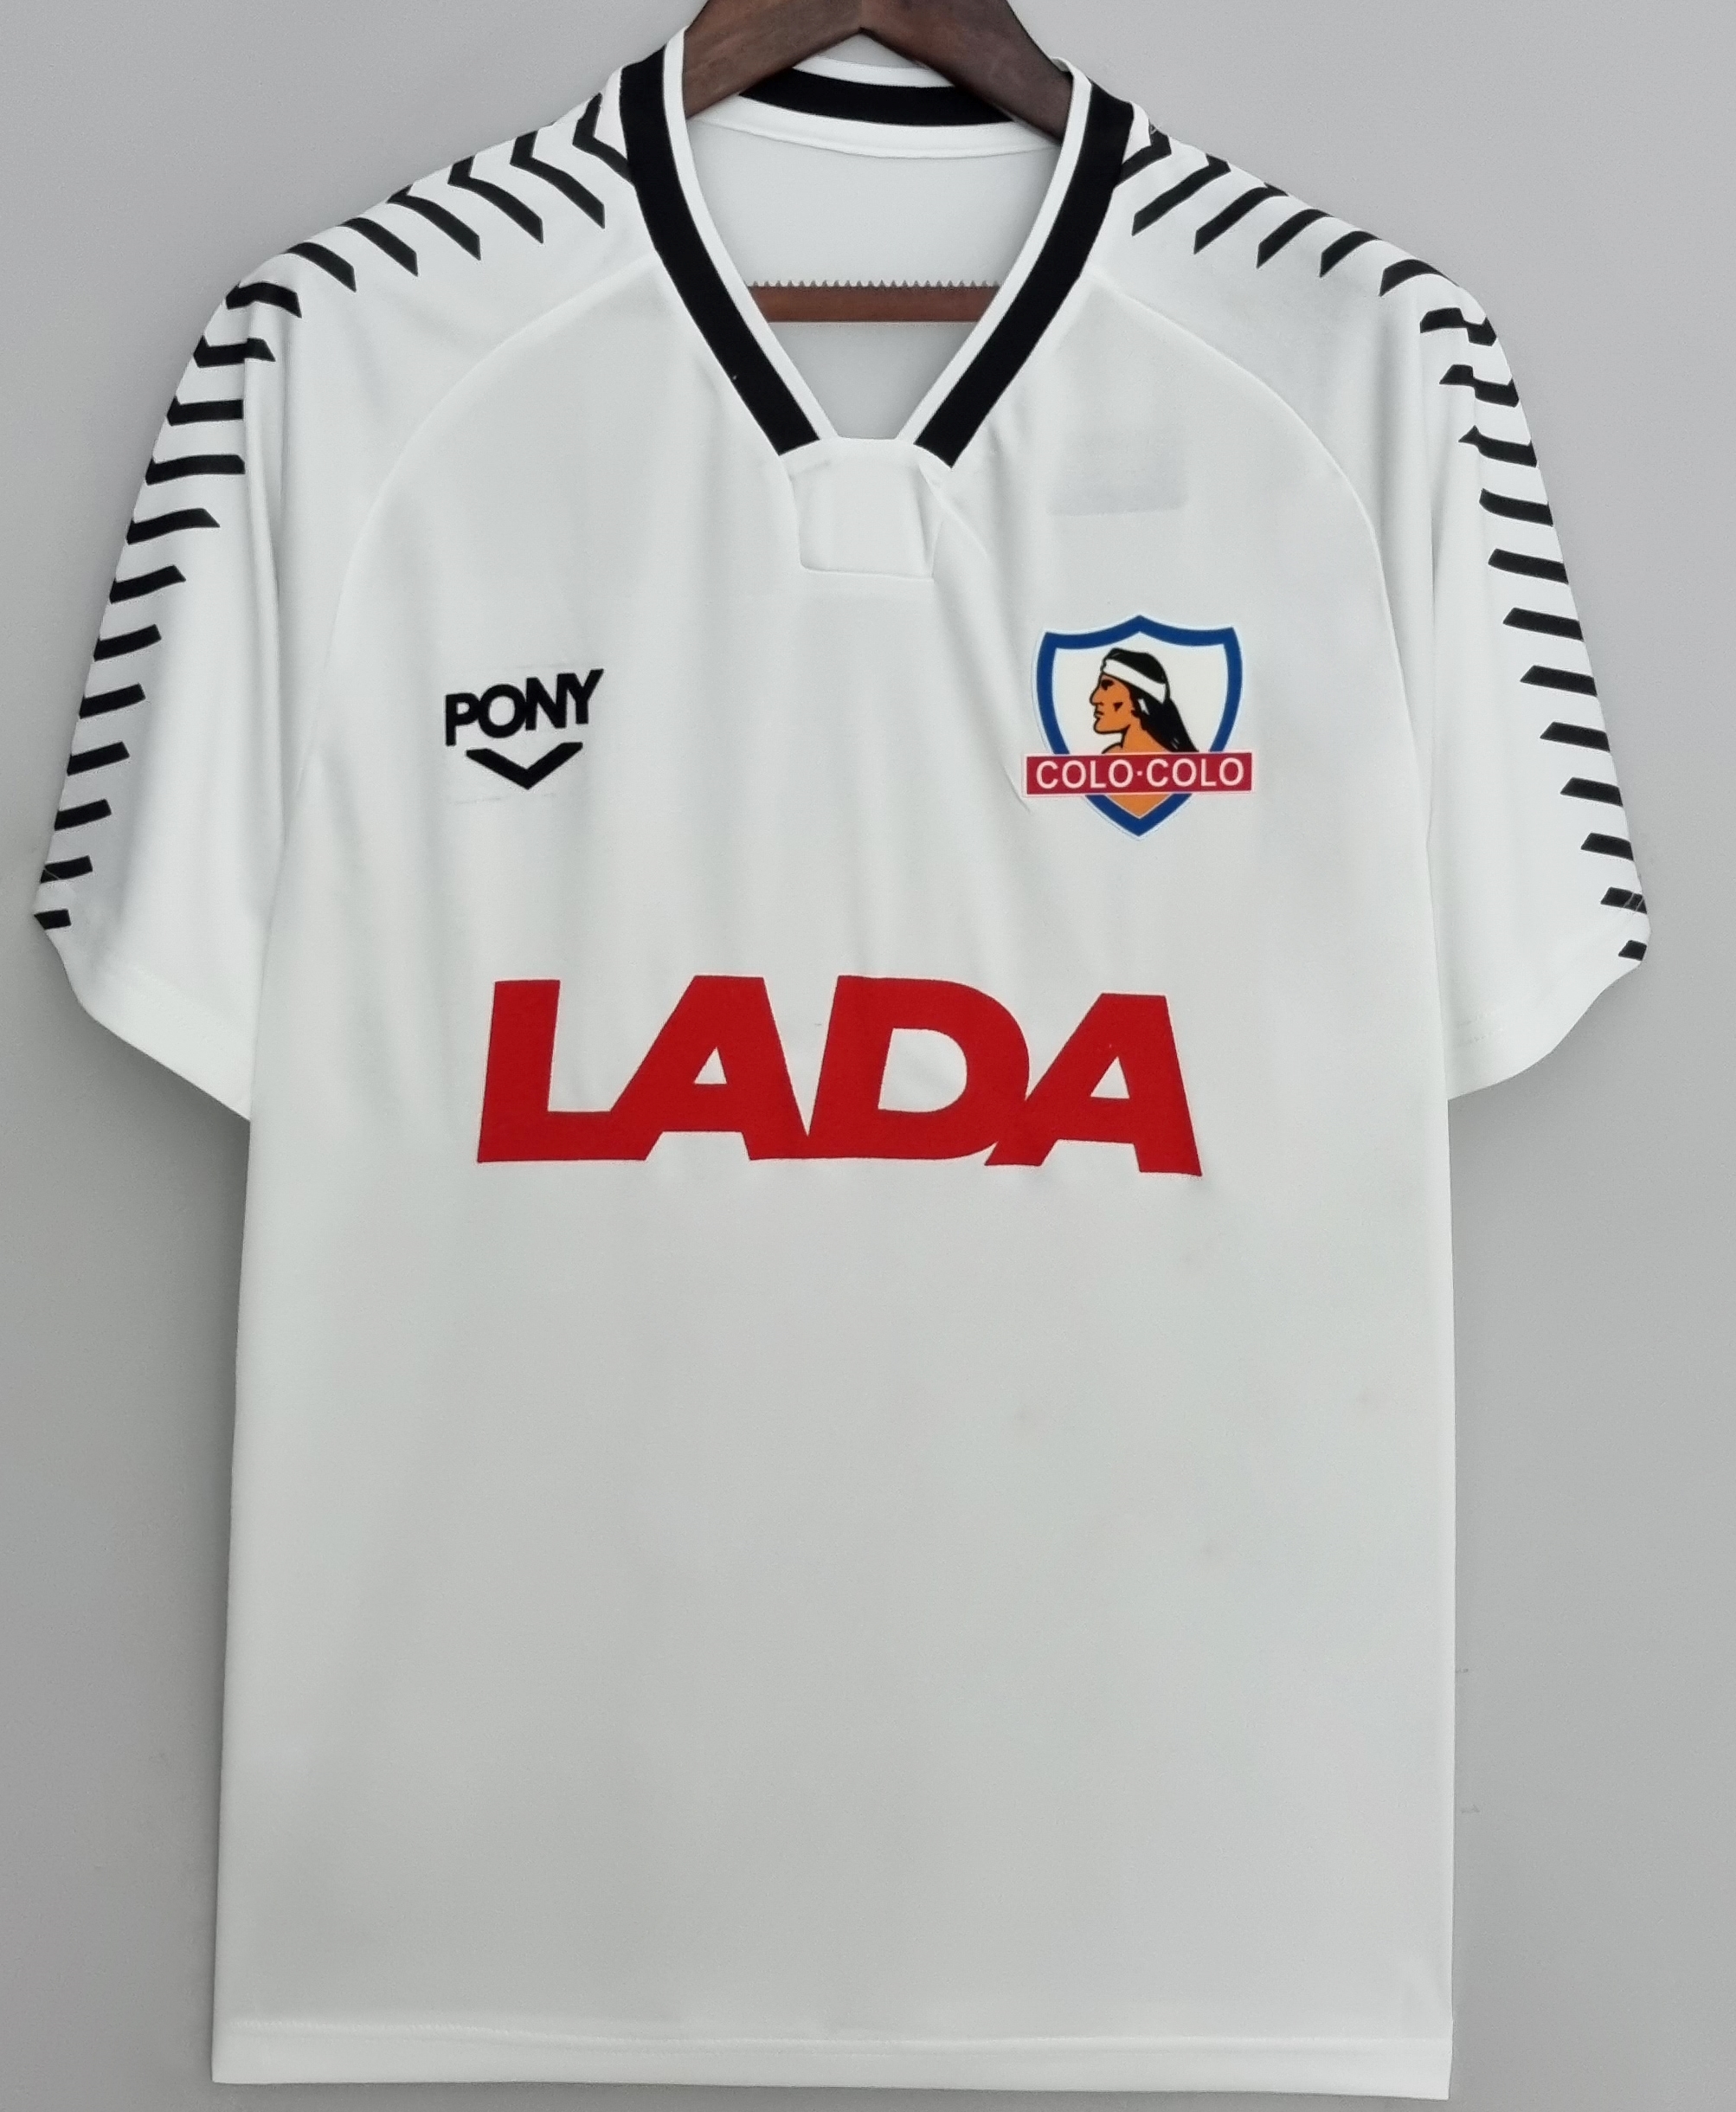 Colo Colo retro soccer jersey 1992